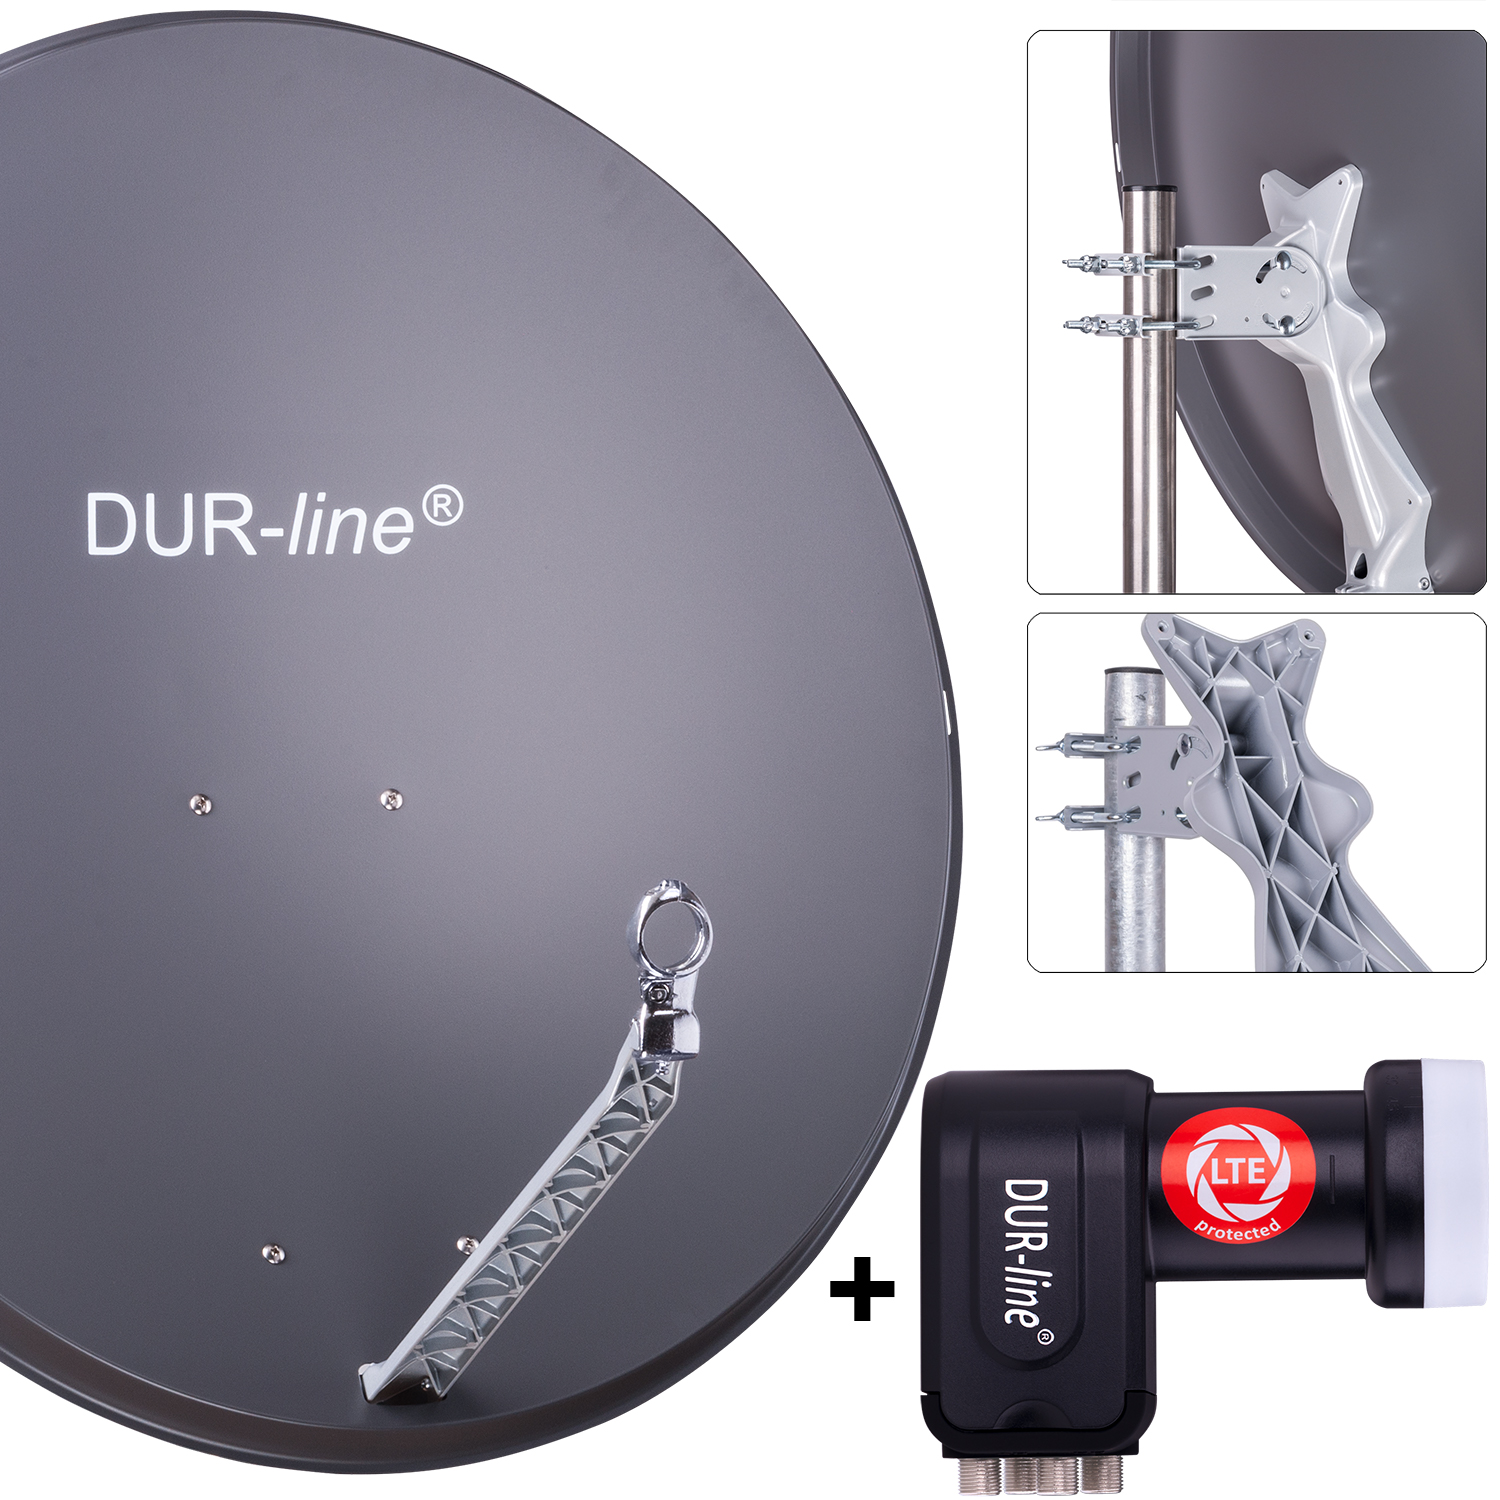 DUR-line MDA 90 Rot Digiatale 4 Teilnehmer Satellitenschüssel Komplett-Anlage mit +Ultra Quad Camping, Astra 19,2°, DVB-S/S2, Full HD, 4K, 3D LNB 